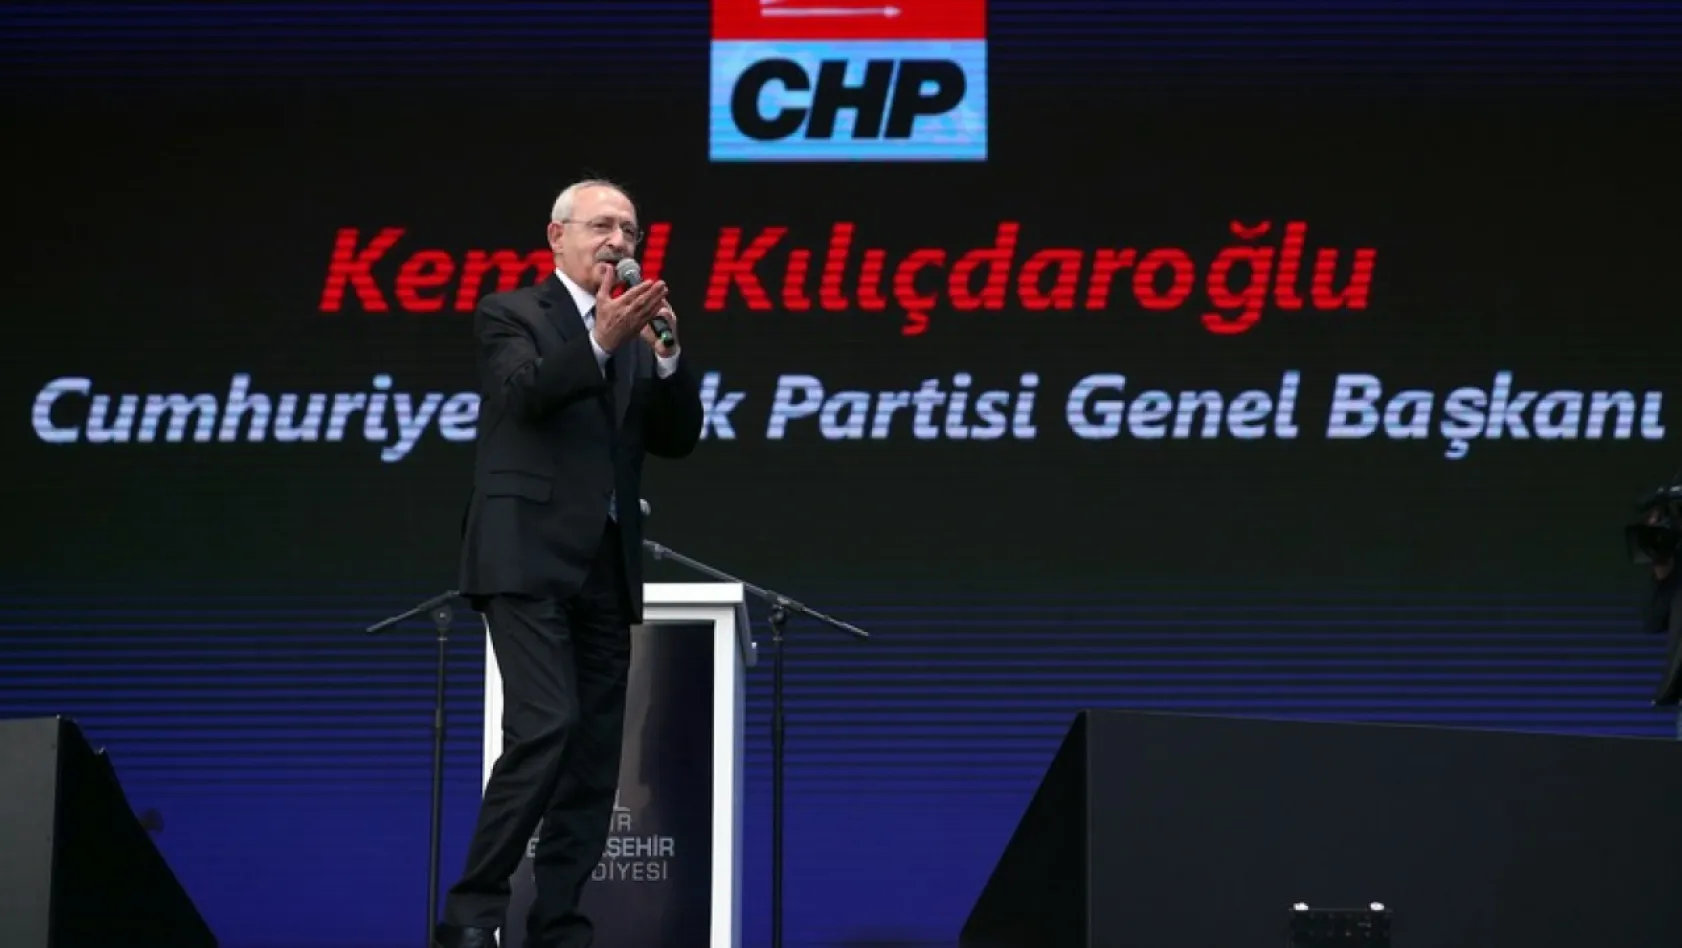 Okulun Temelini Kılıçdaroğlu Atacak